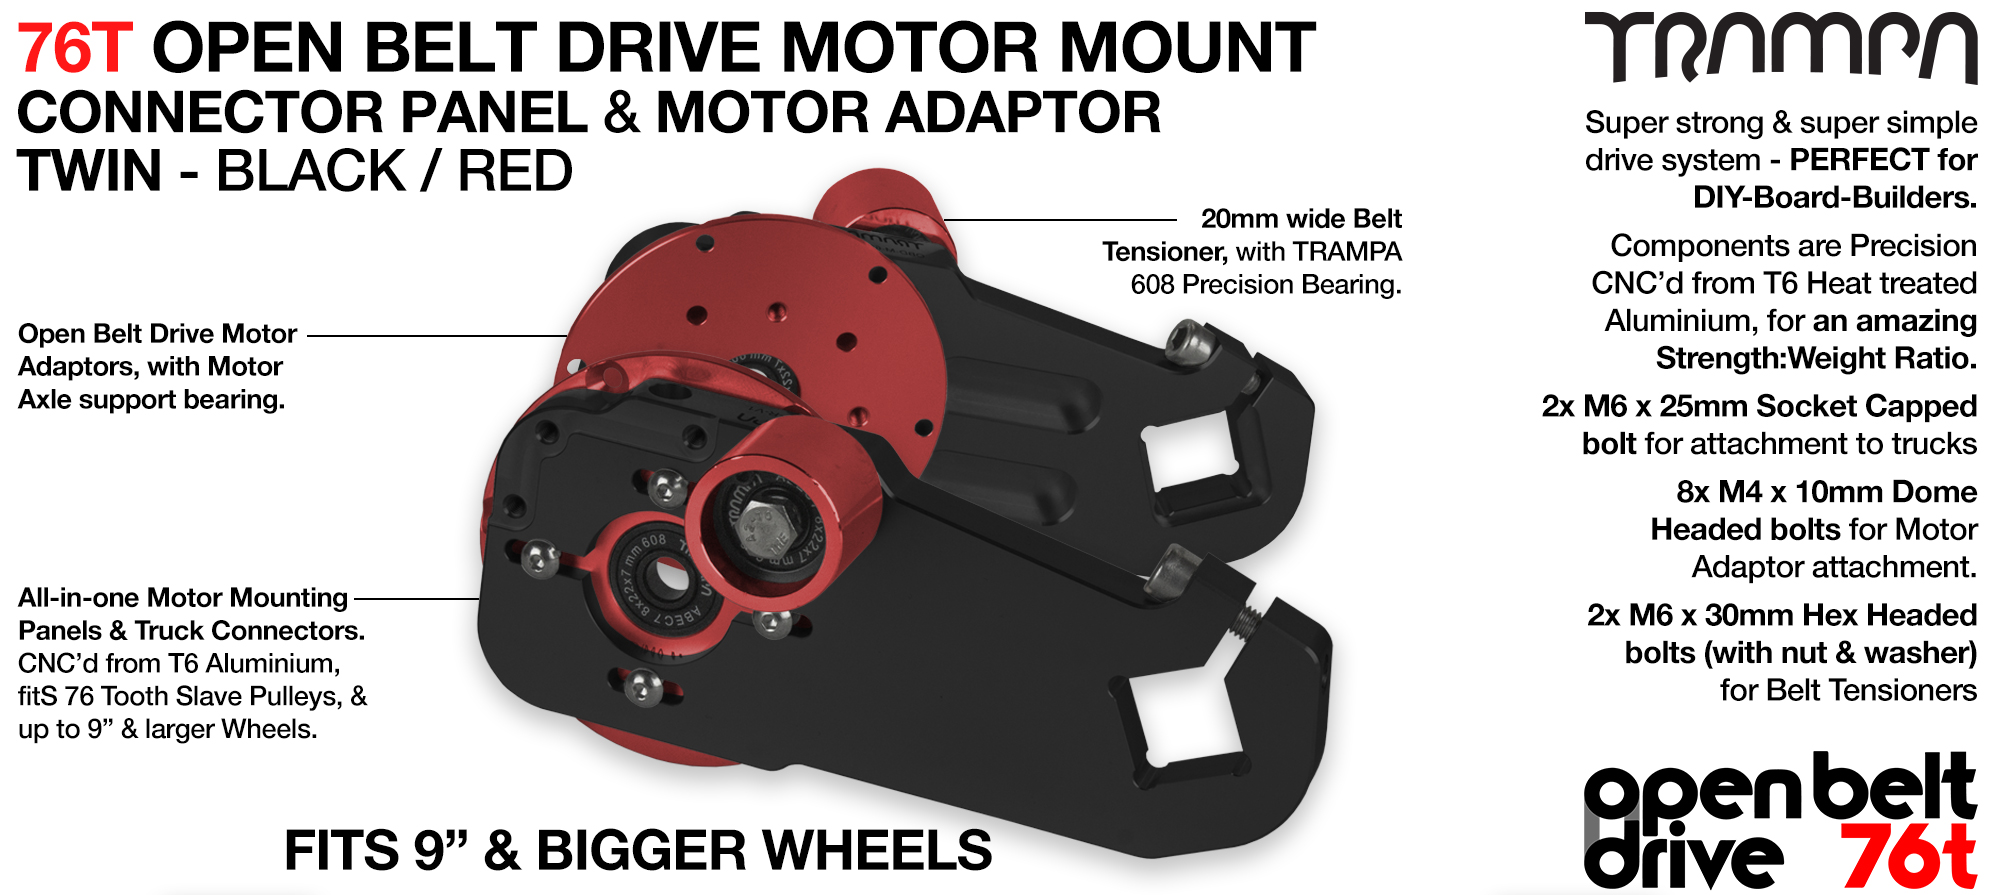 76T Open Belt Drive Motor Mount & Motor Adaptor - TWIN RED